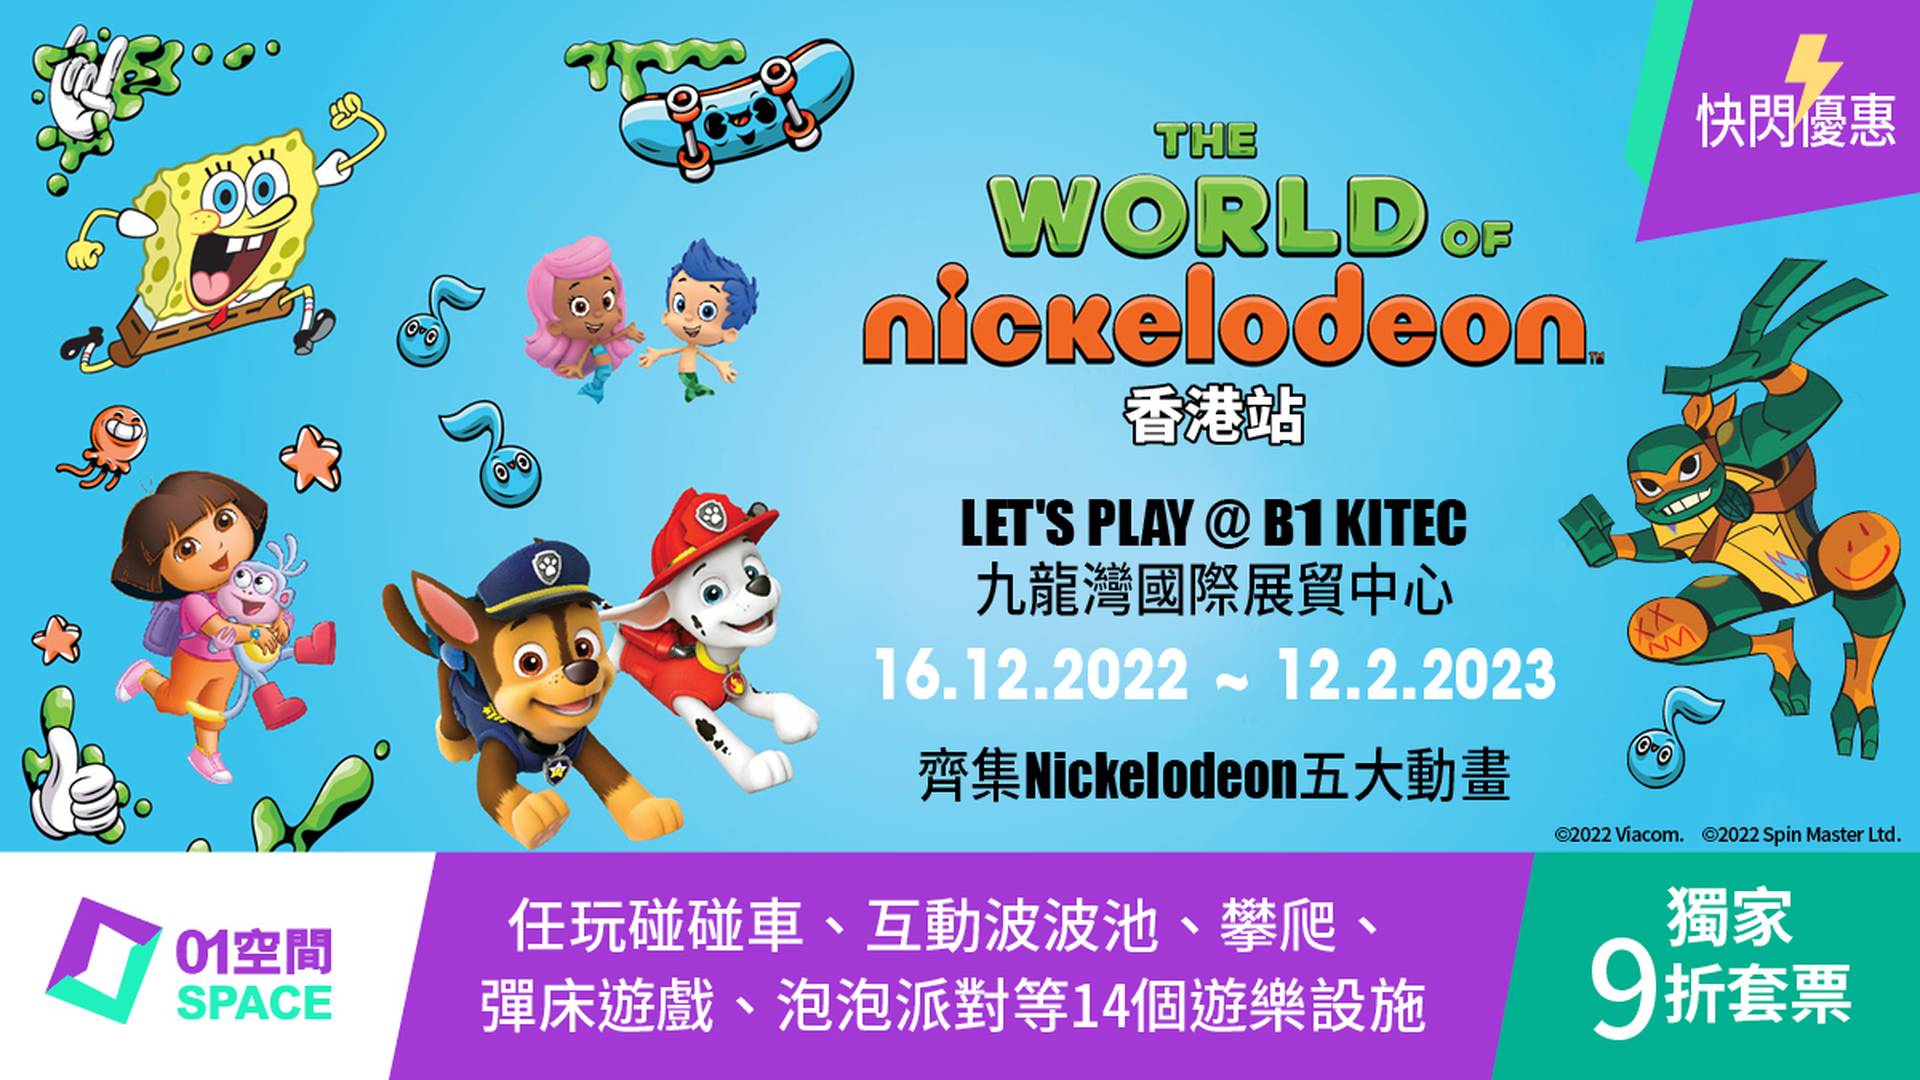 限時9折套票｜The World Of Nickelodeon 特展香港站門票（需2個工作天前預訂）